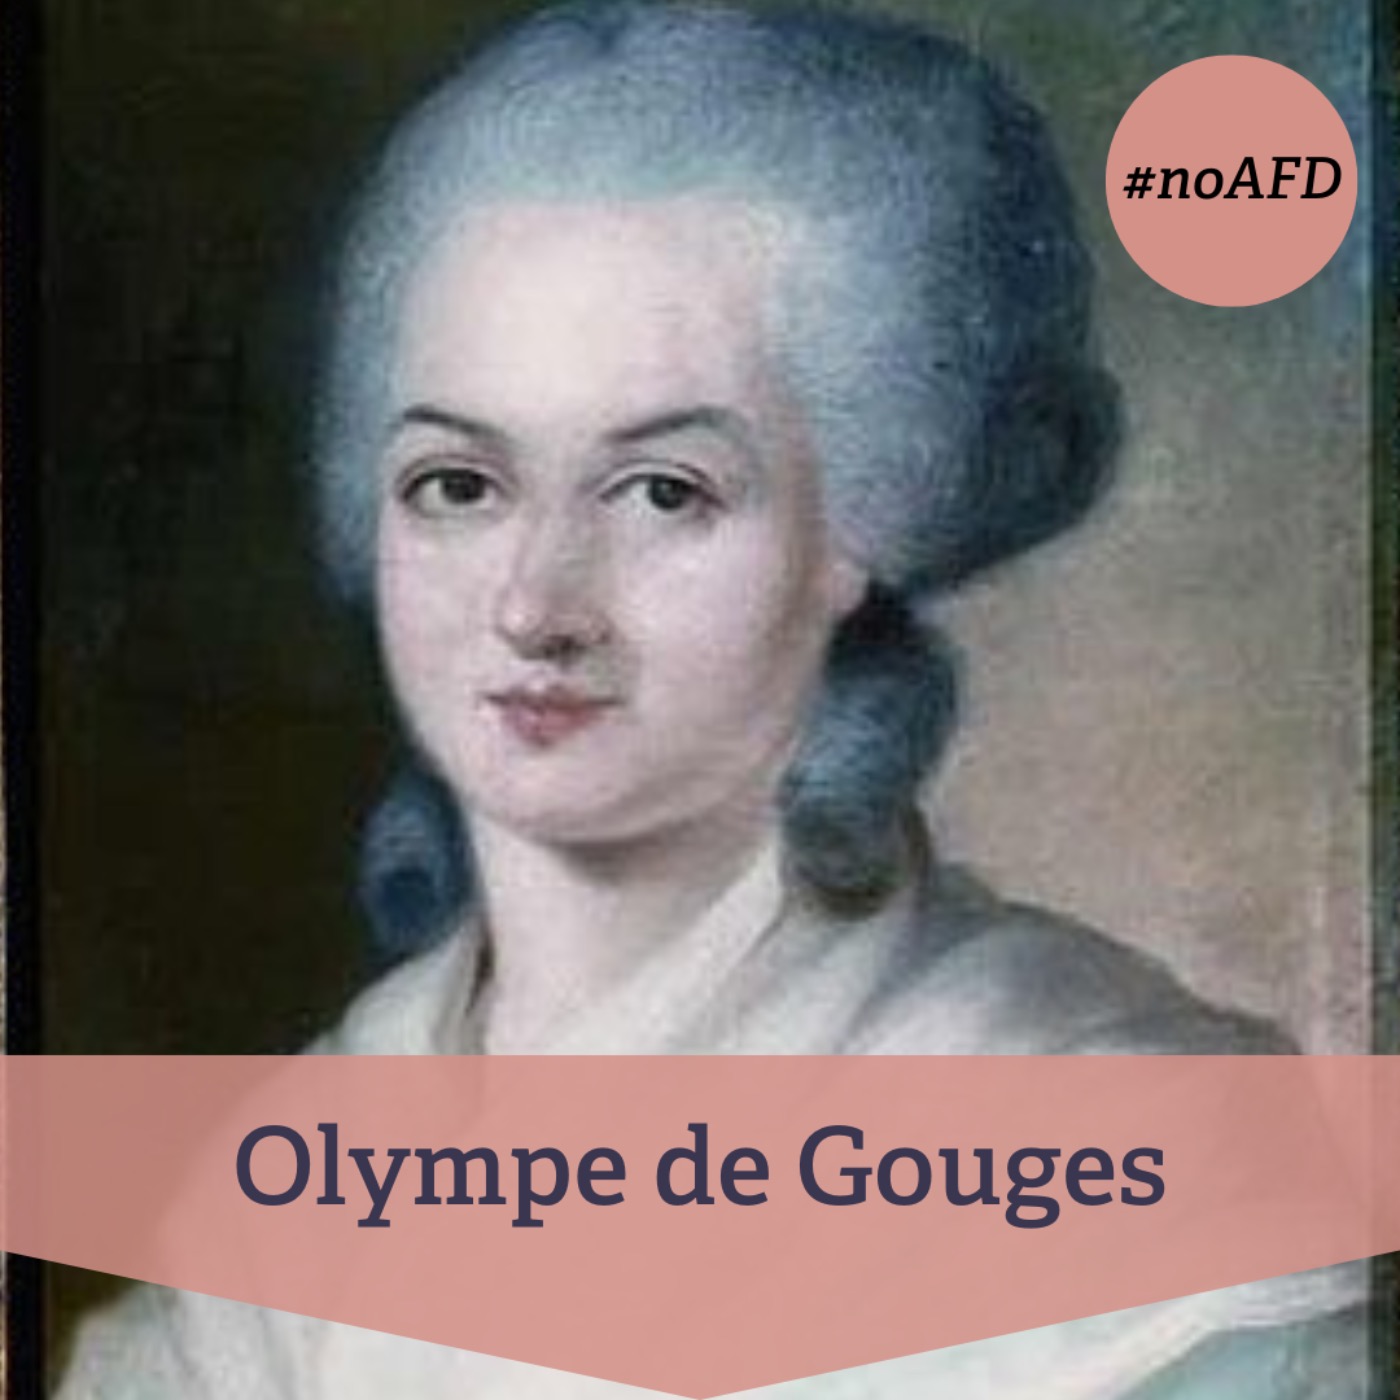 cover art for #229 Olympe de Gouges – französische Revolutionärin und wegweisende Frauenrechtlerin